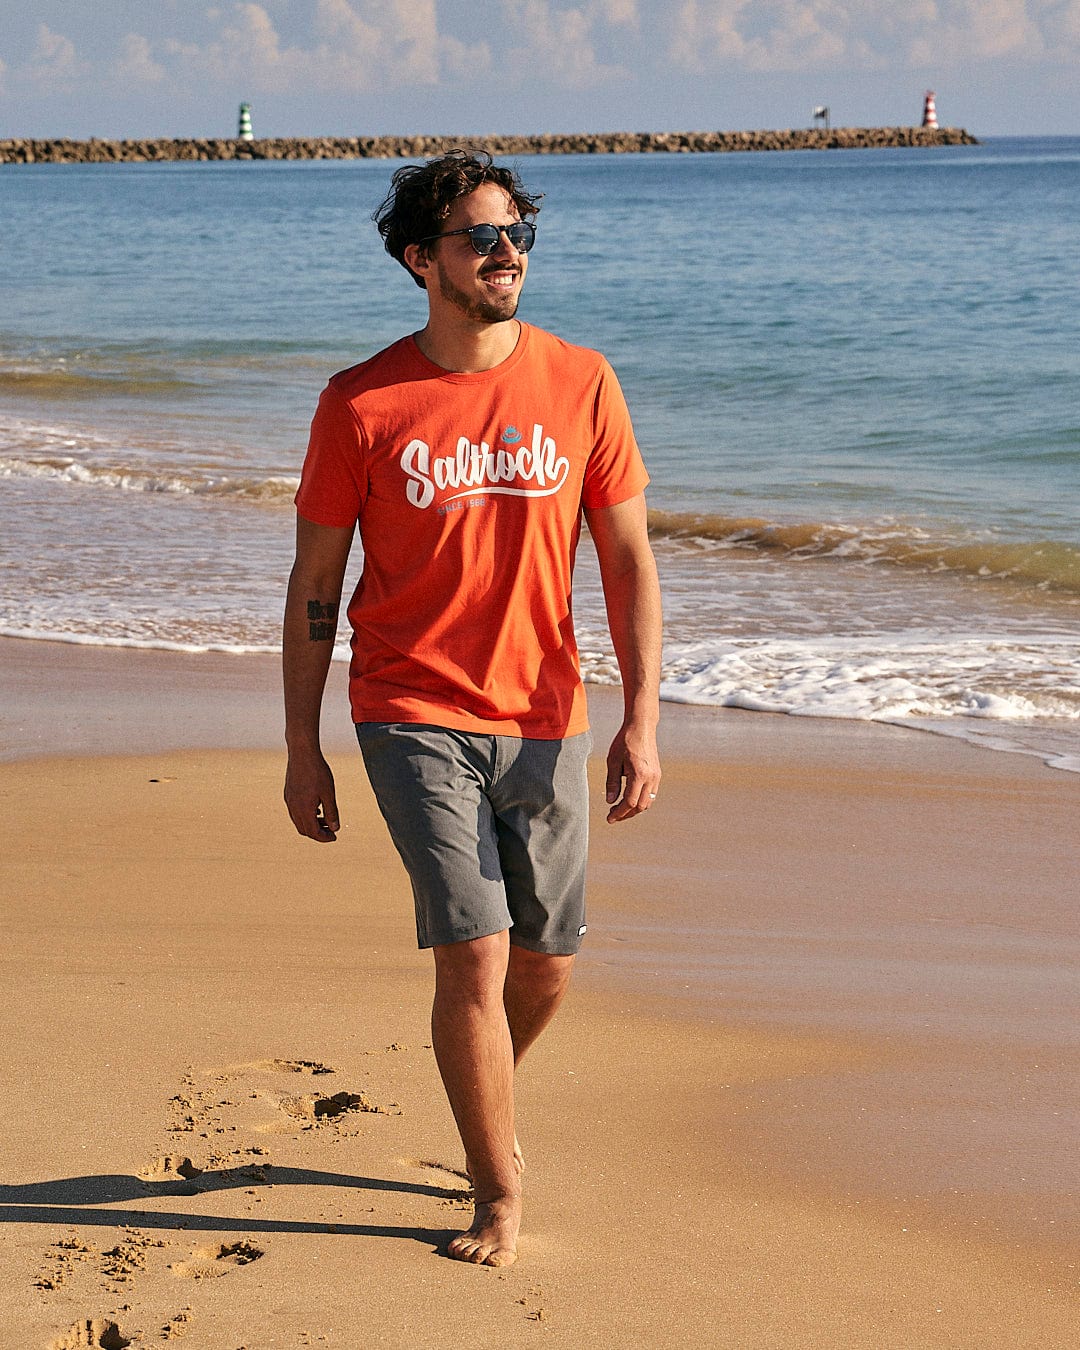 A man walking on a beach near the ocean wearing a Saltrock Speed - Mens Short Sleeve T-Shirt - Red.